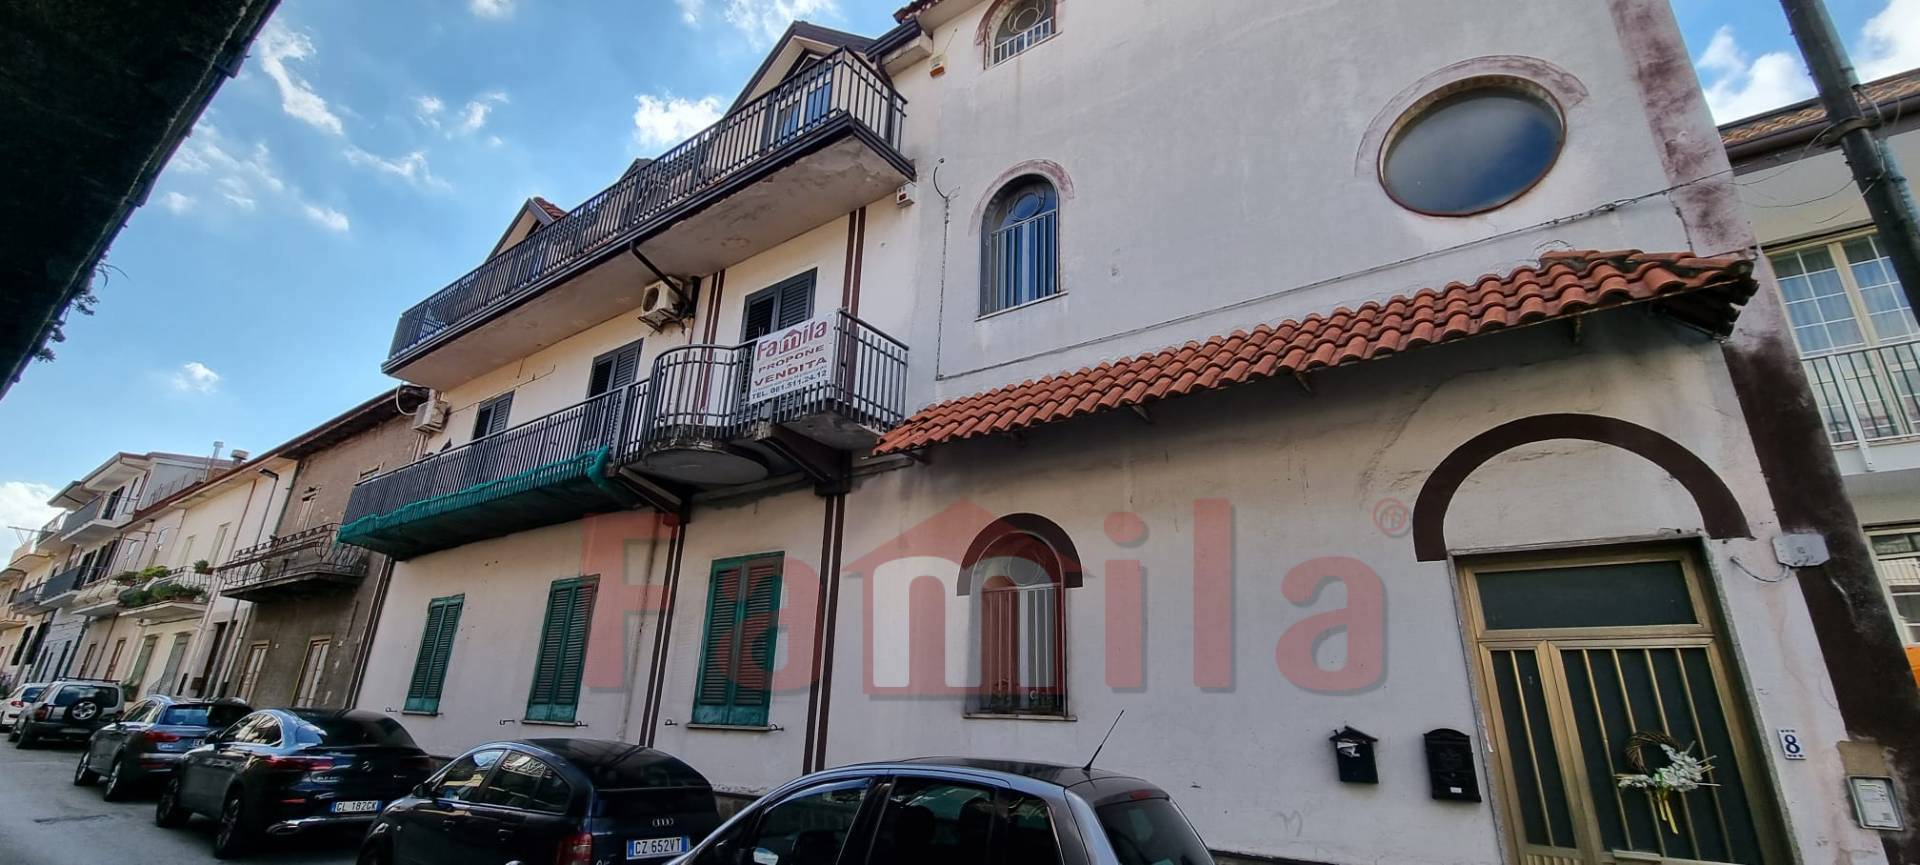 Appartamento in vendita a Baiano, 3 locali, prezzo € 69.000 | PortaleAgenzieImmobiliari.it